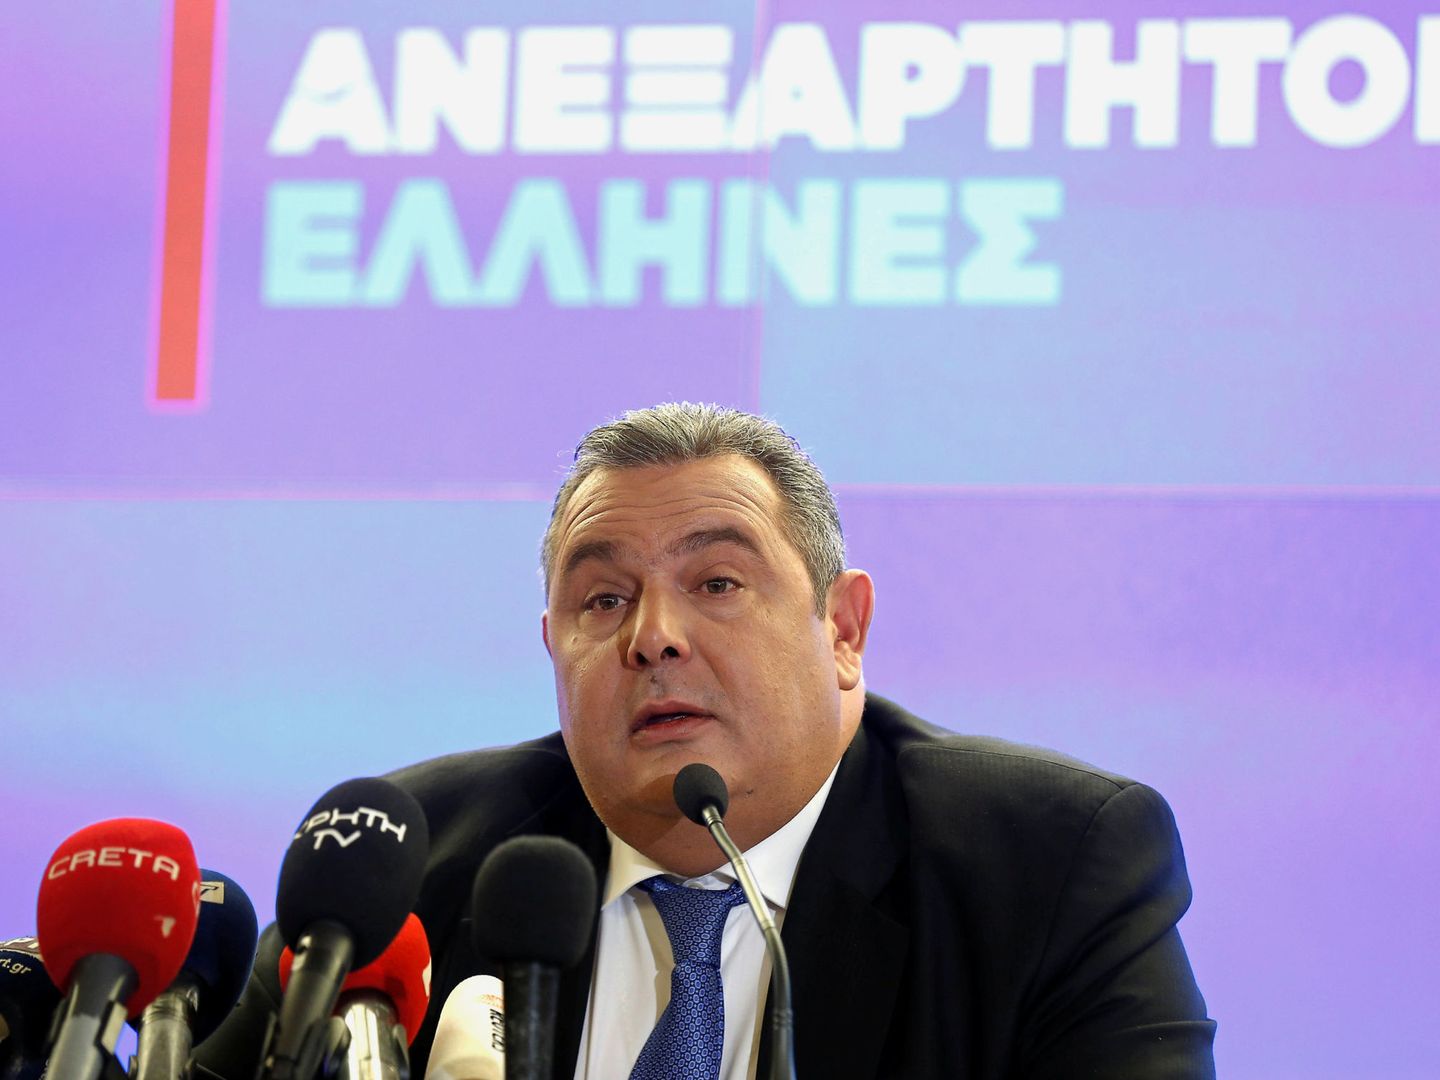 Panos Kammenos, el socio de Gobierno de Tsipras, da explicaciones a la prensa sobre su dimisión, en Atenas, el 13 de enero de 2019. (Reuters)